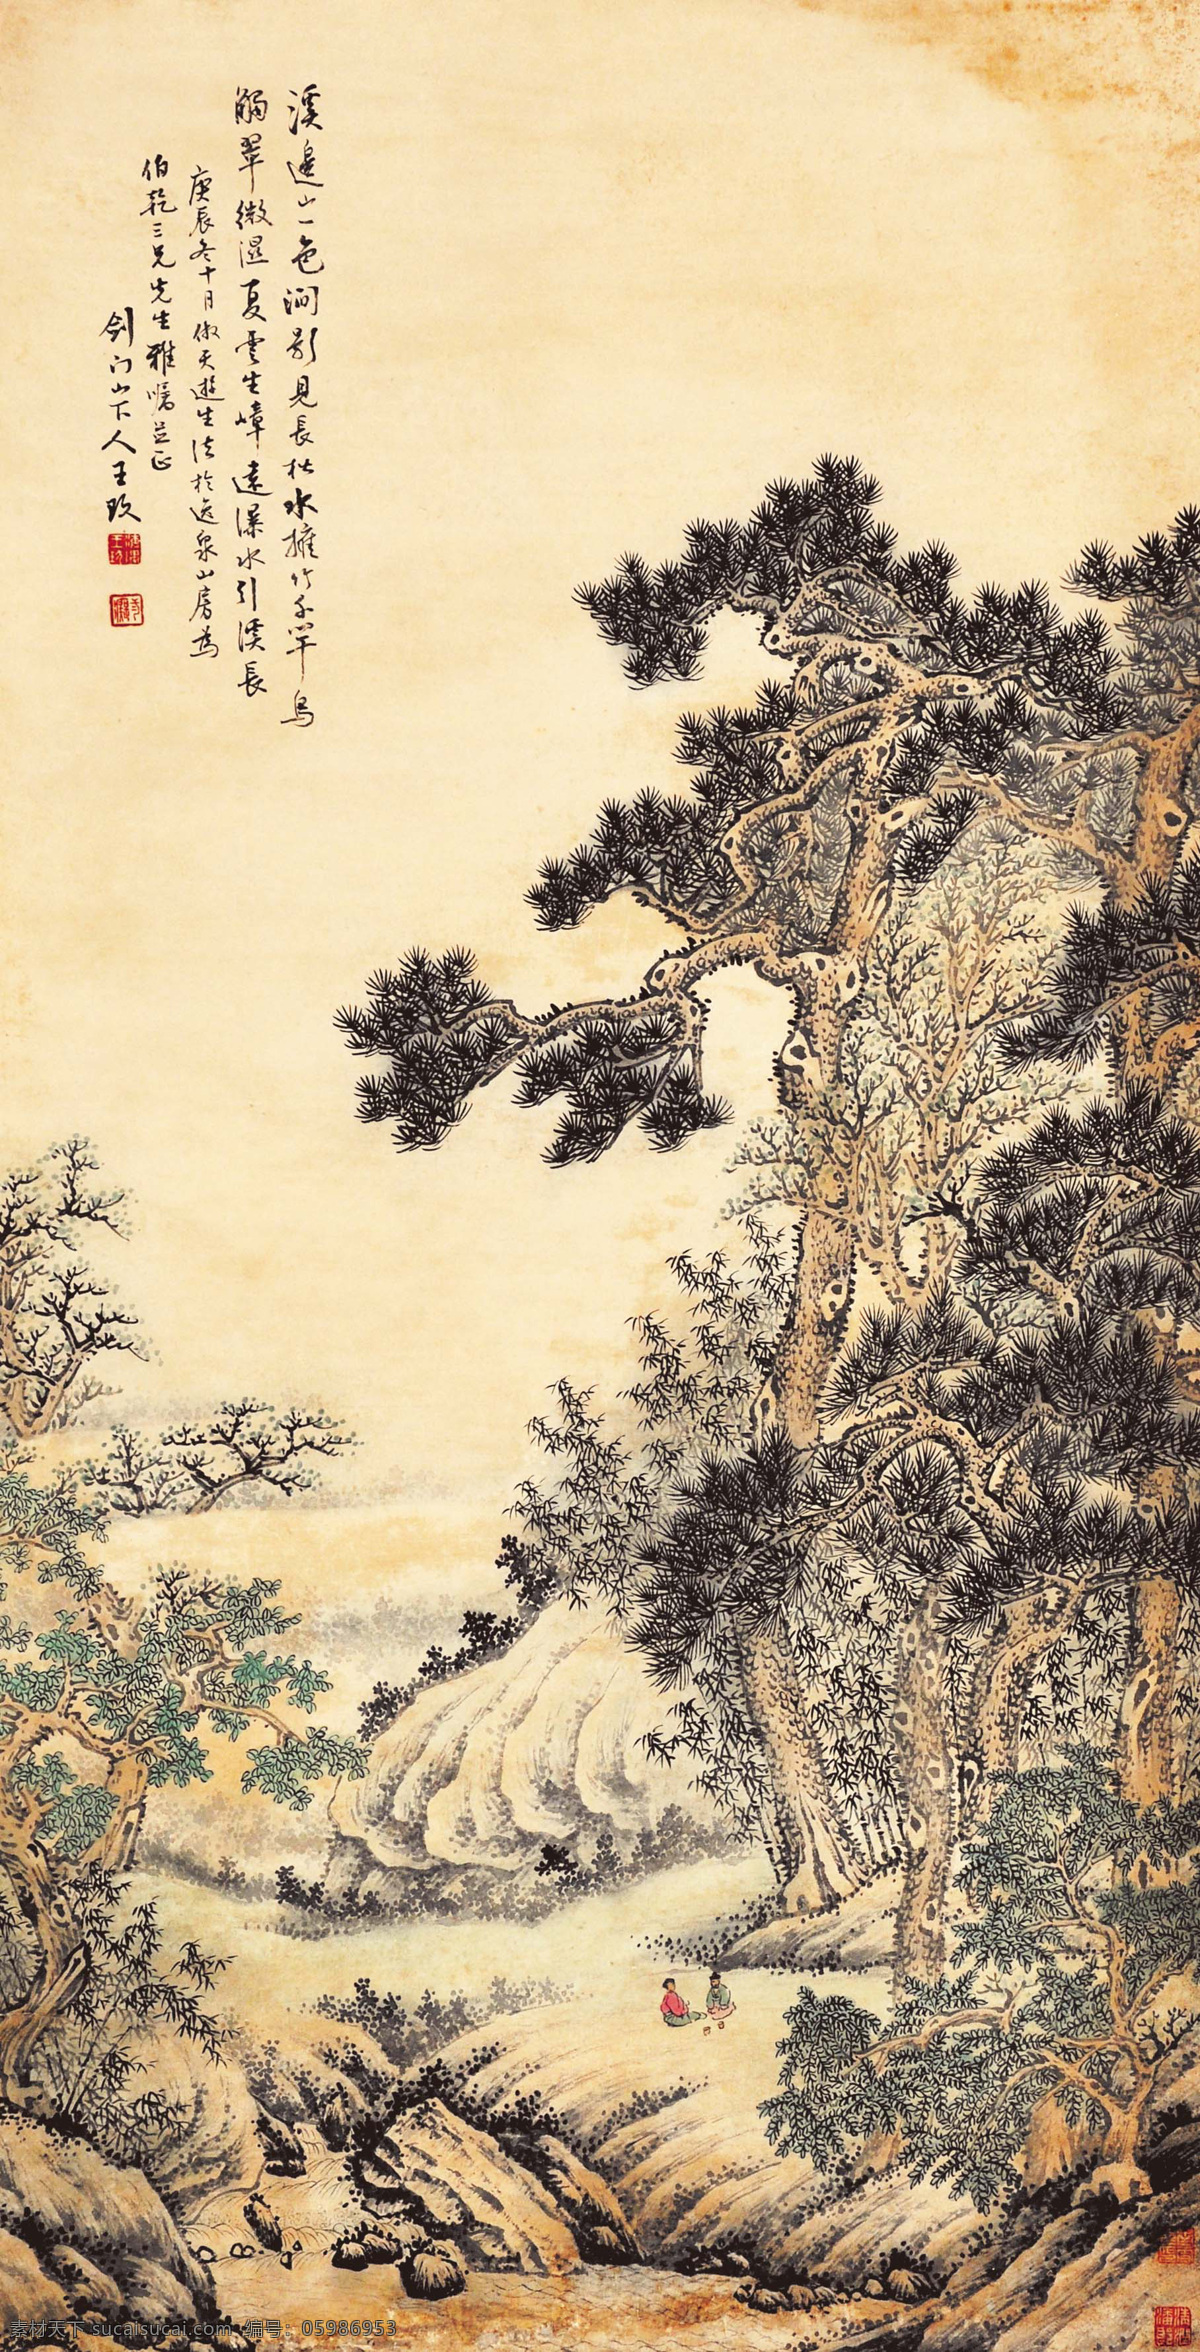 王玖 青绿山水 写意 水墨画 国画 中国画 传统画 名家 绘画 艺术 文化艺术 绘画书法